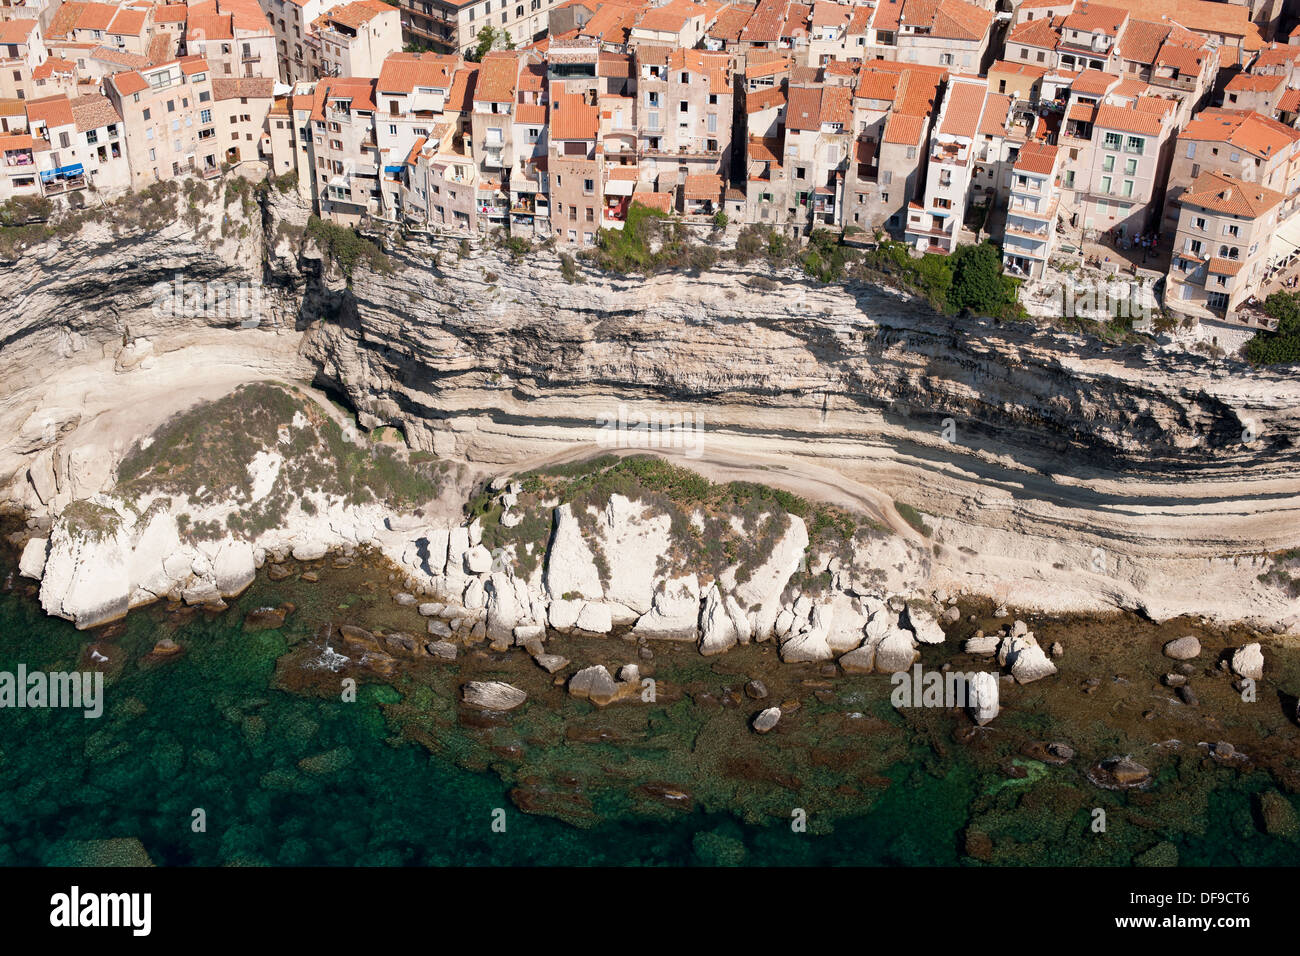 VUE AÉRIENNE.Maisons au sommet d'une falaise de calcaire au-dessus de la mer Méditerranée.Bonifacio, Corse, France. Banque D'Images